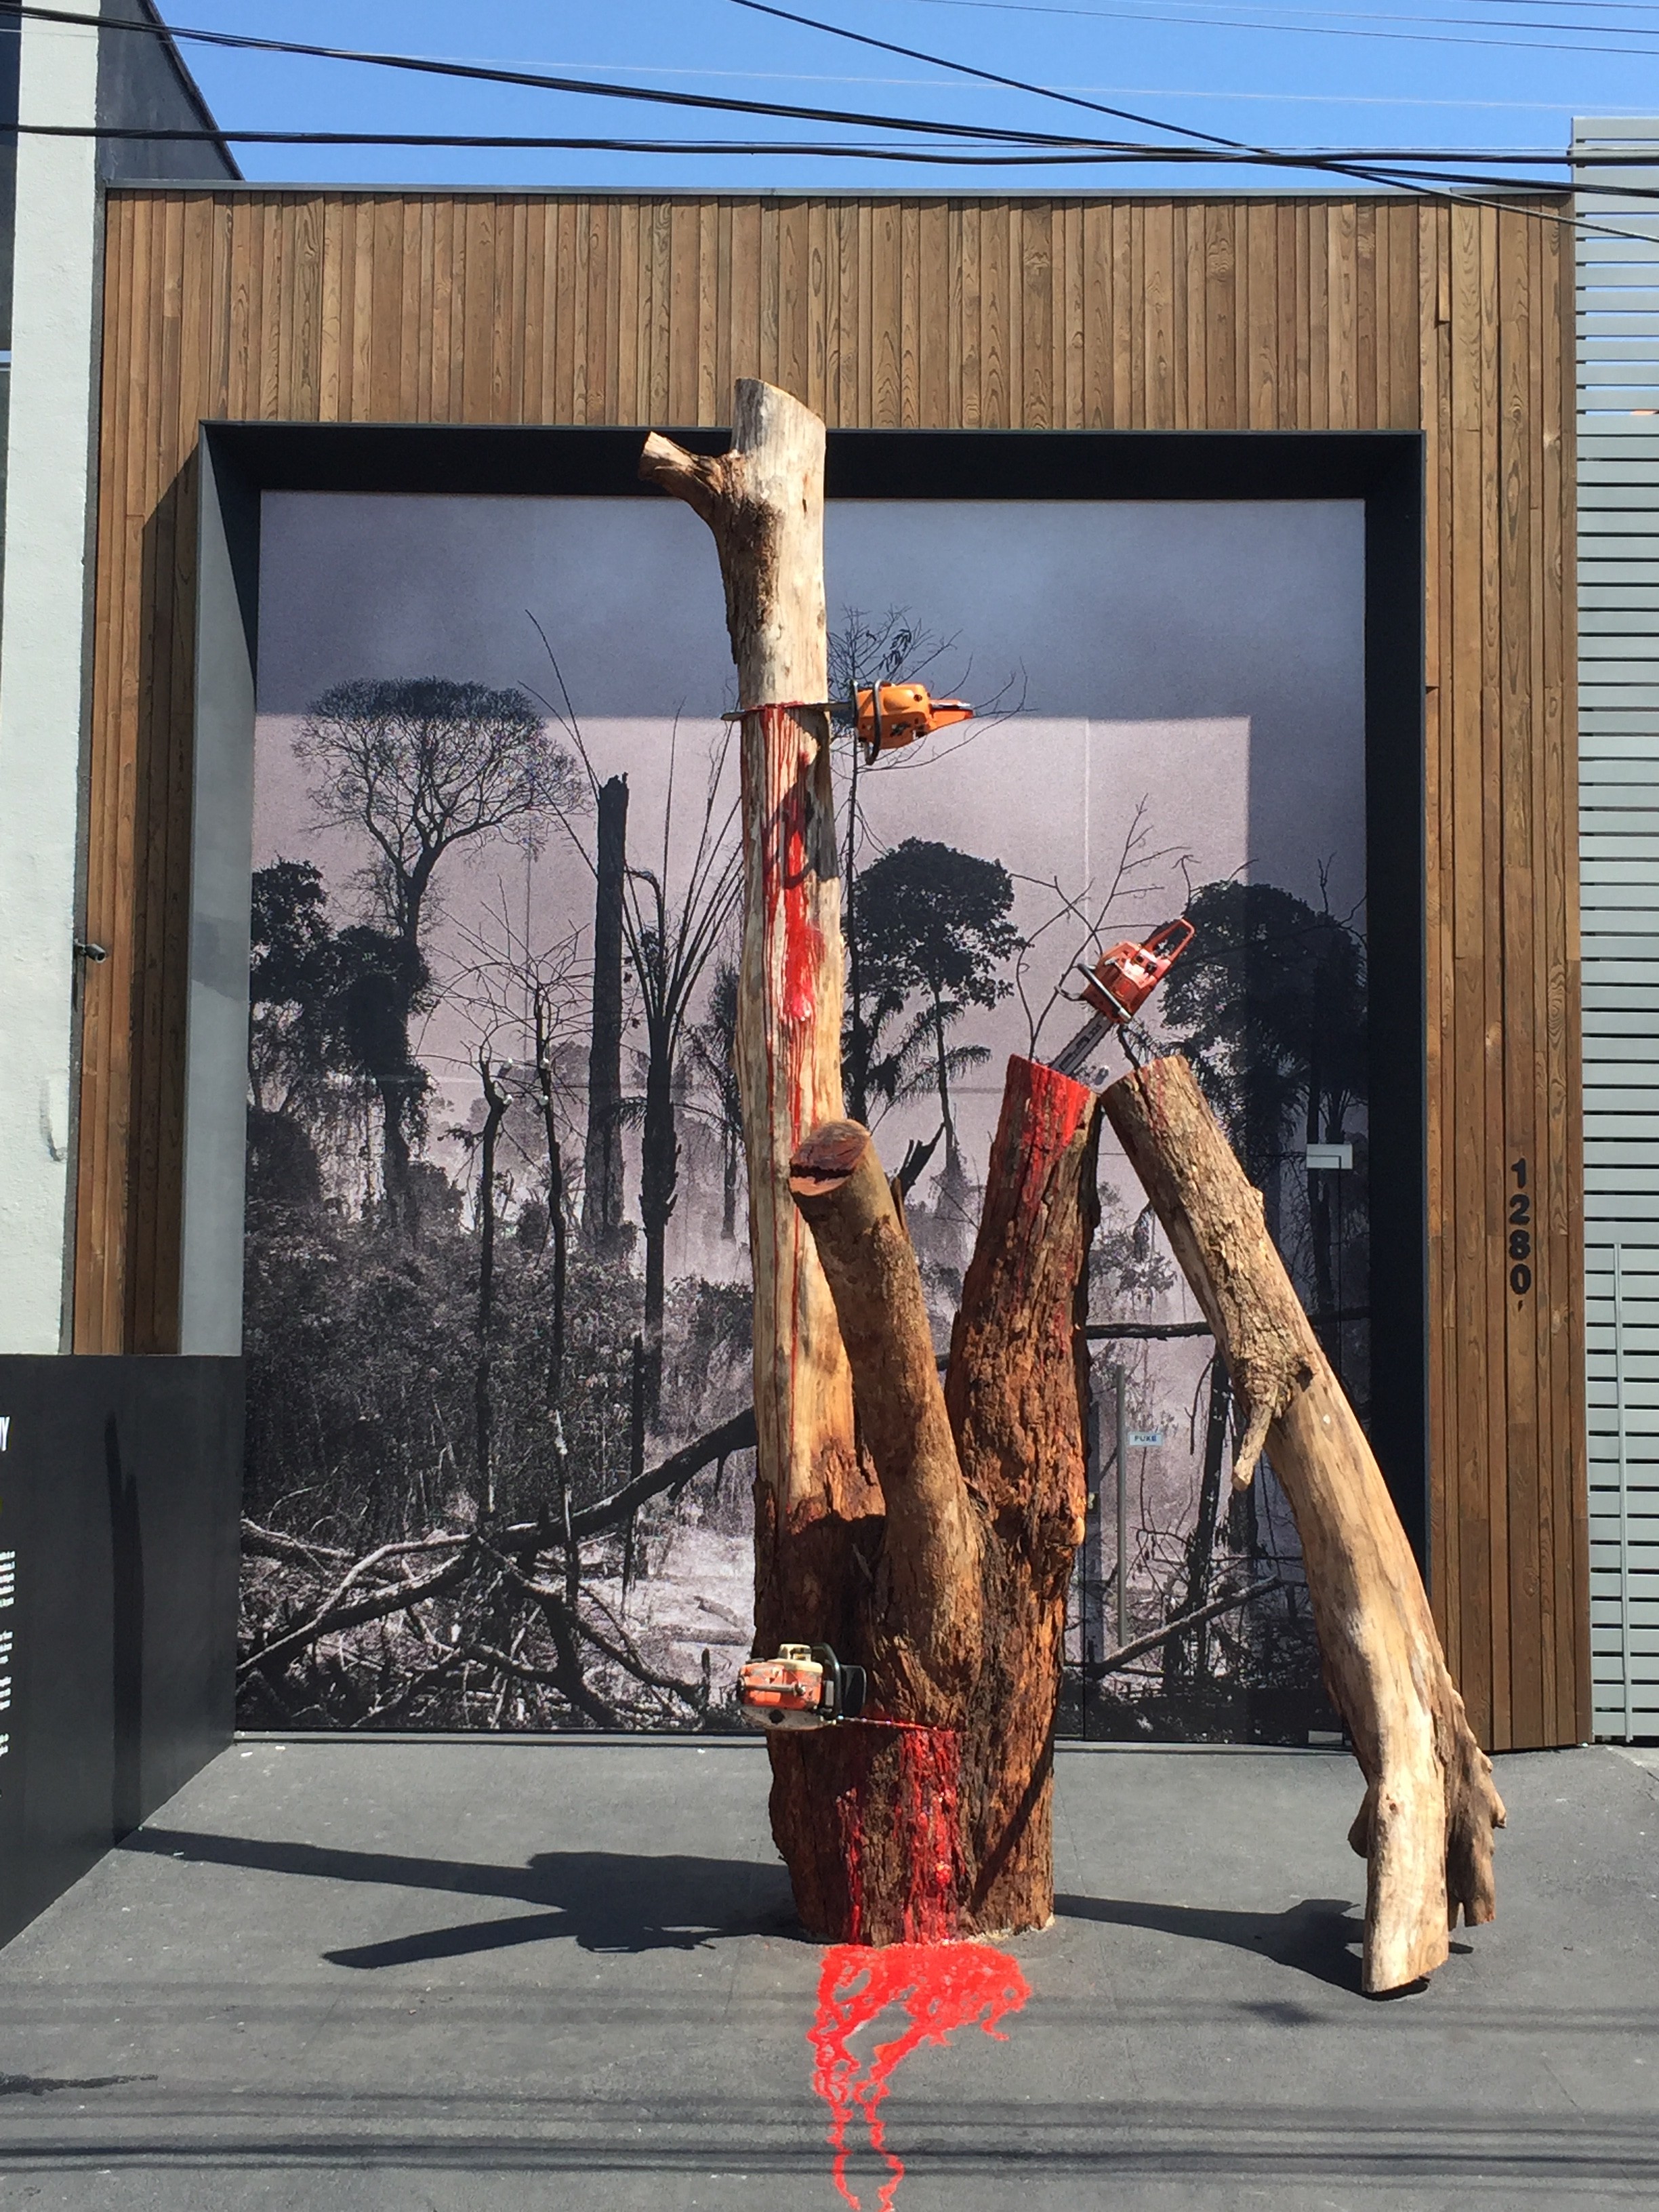 Artista cria obra com árvore sangrando como alerta ao desmatamento (Foto: Divulgação)